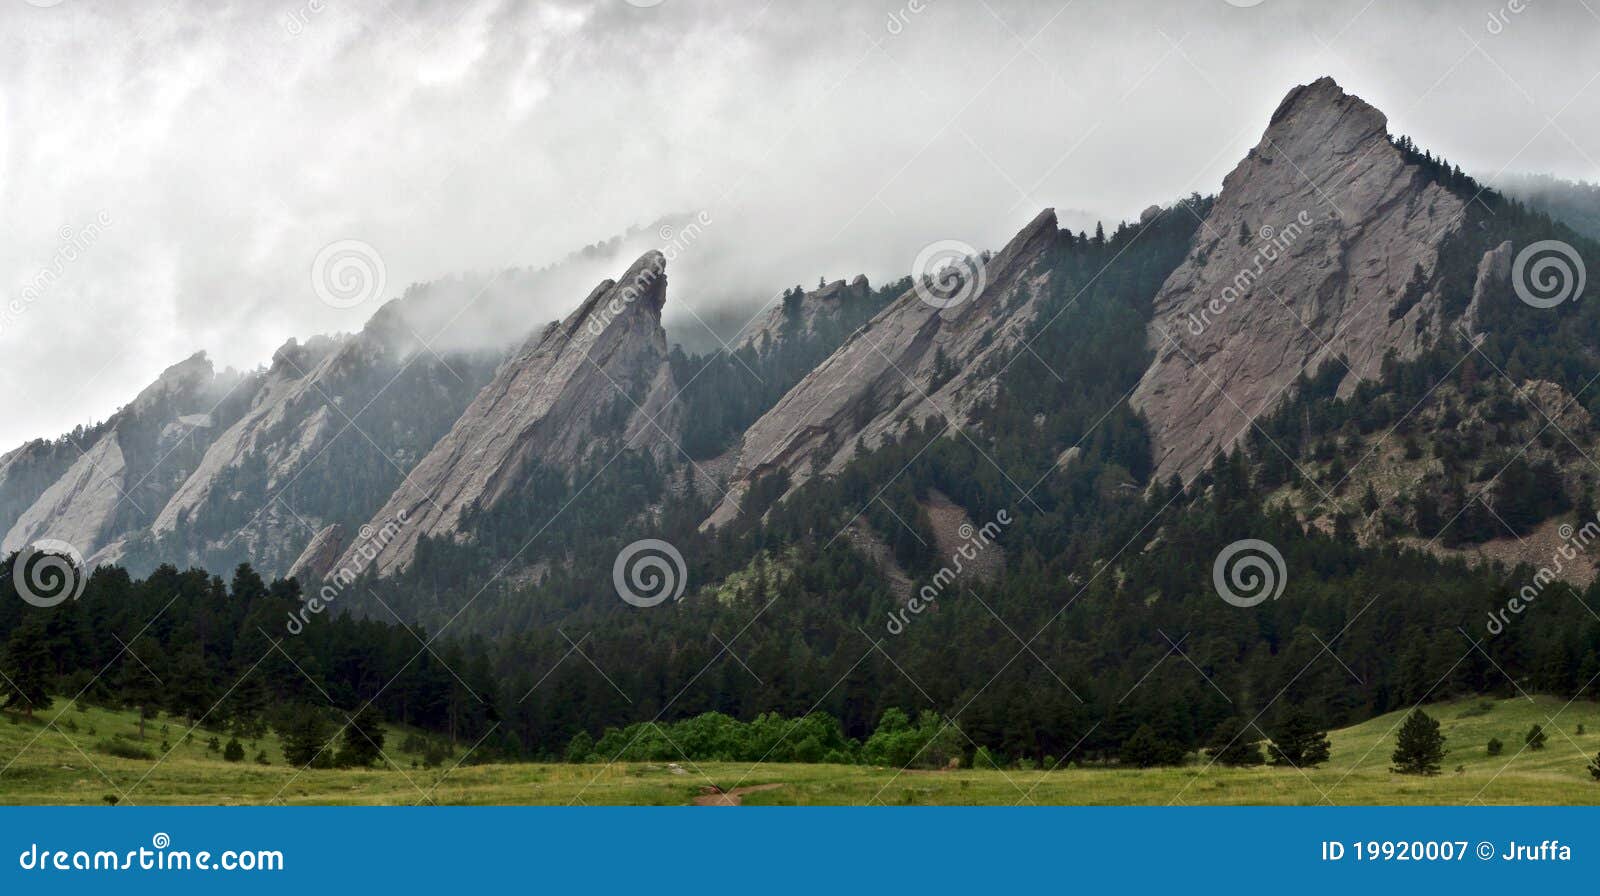 closeup of flatiron mountains in boulder, colorado